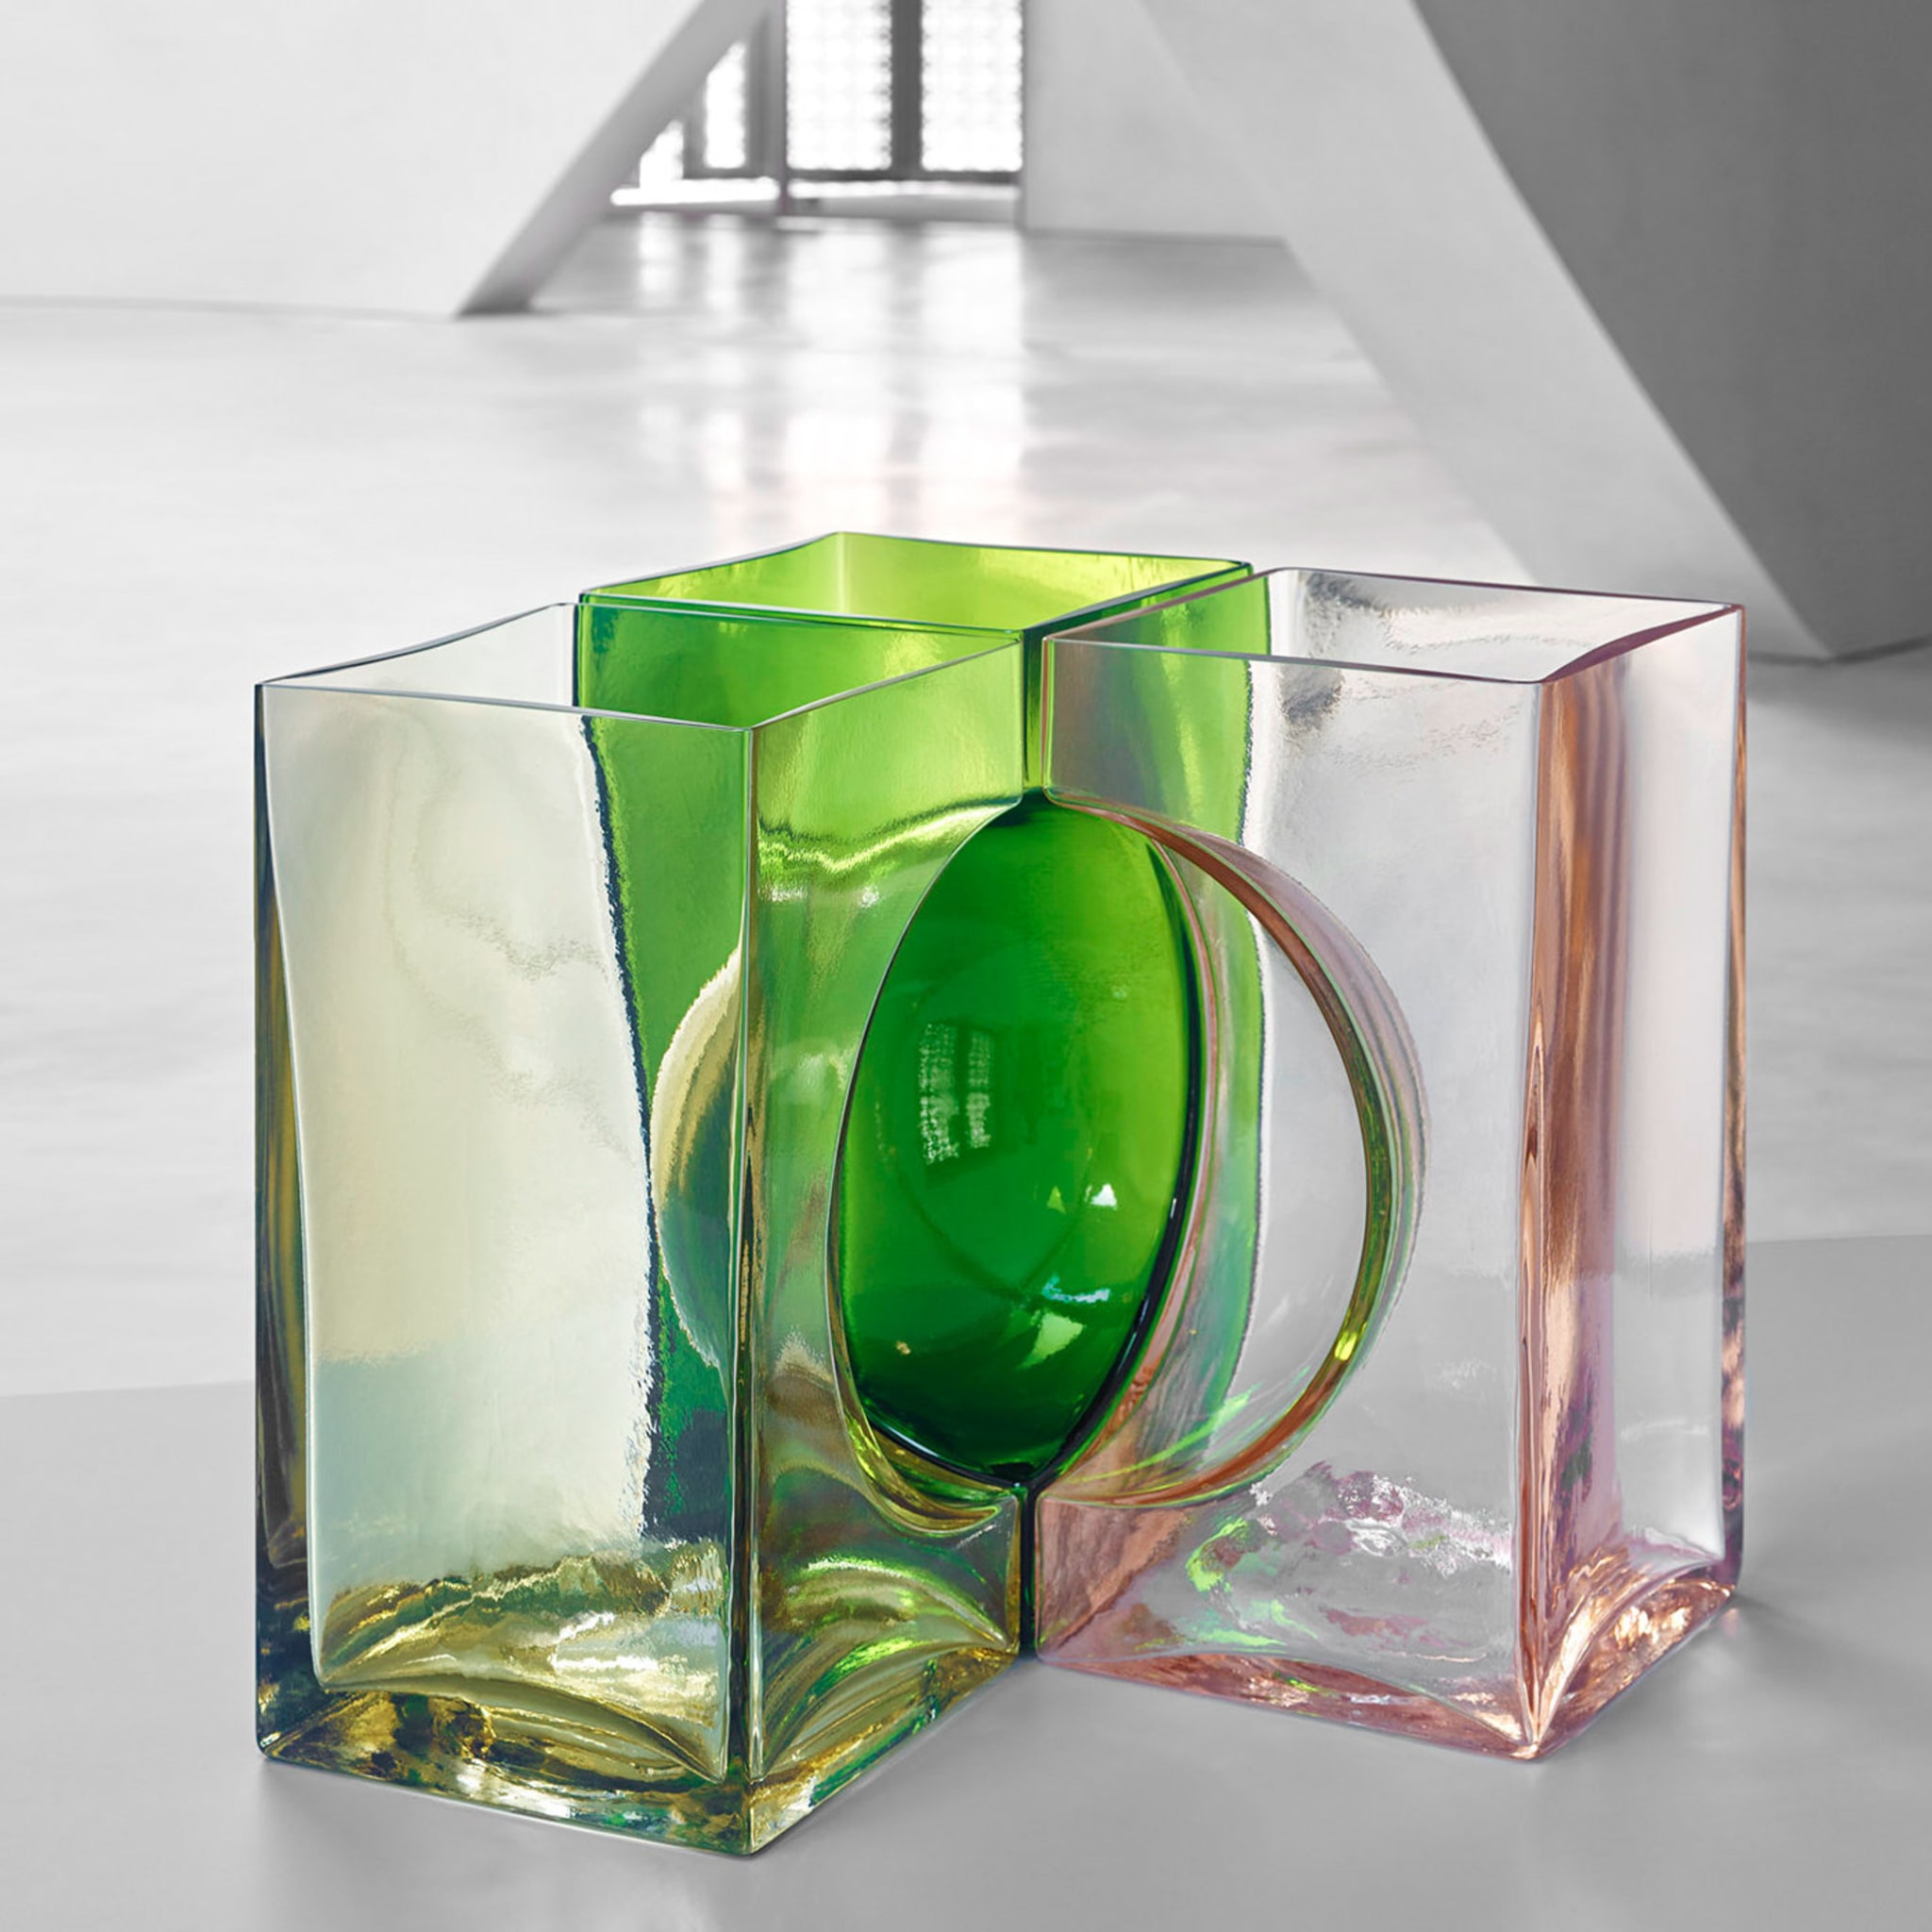 Ando Cosmos Green Crystal Sculpture by Tadao Ando - Alternative view 1